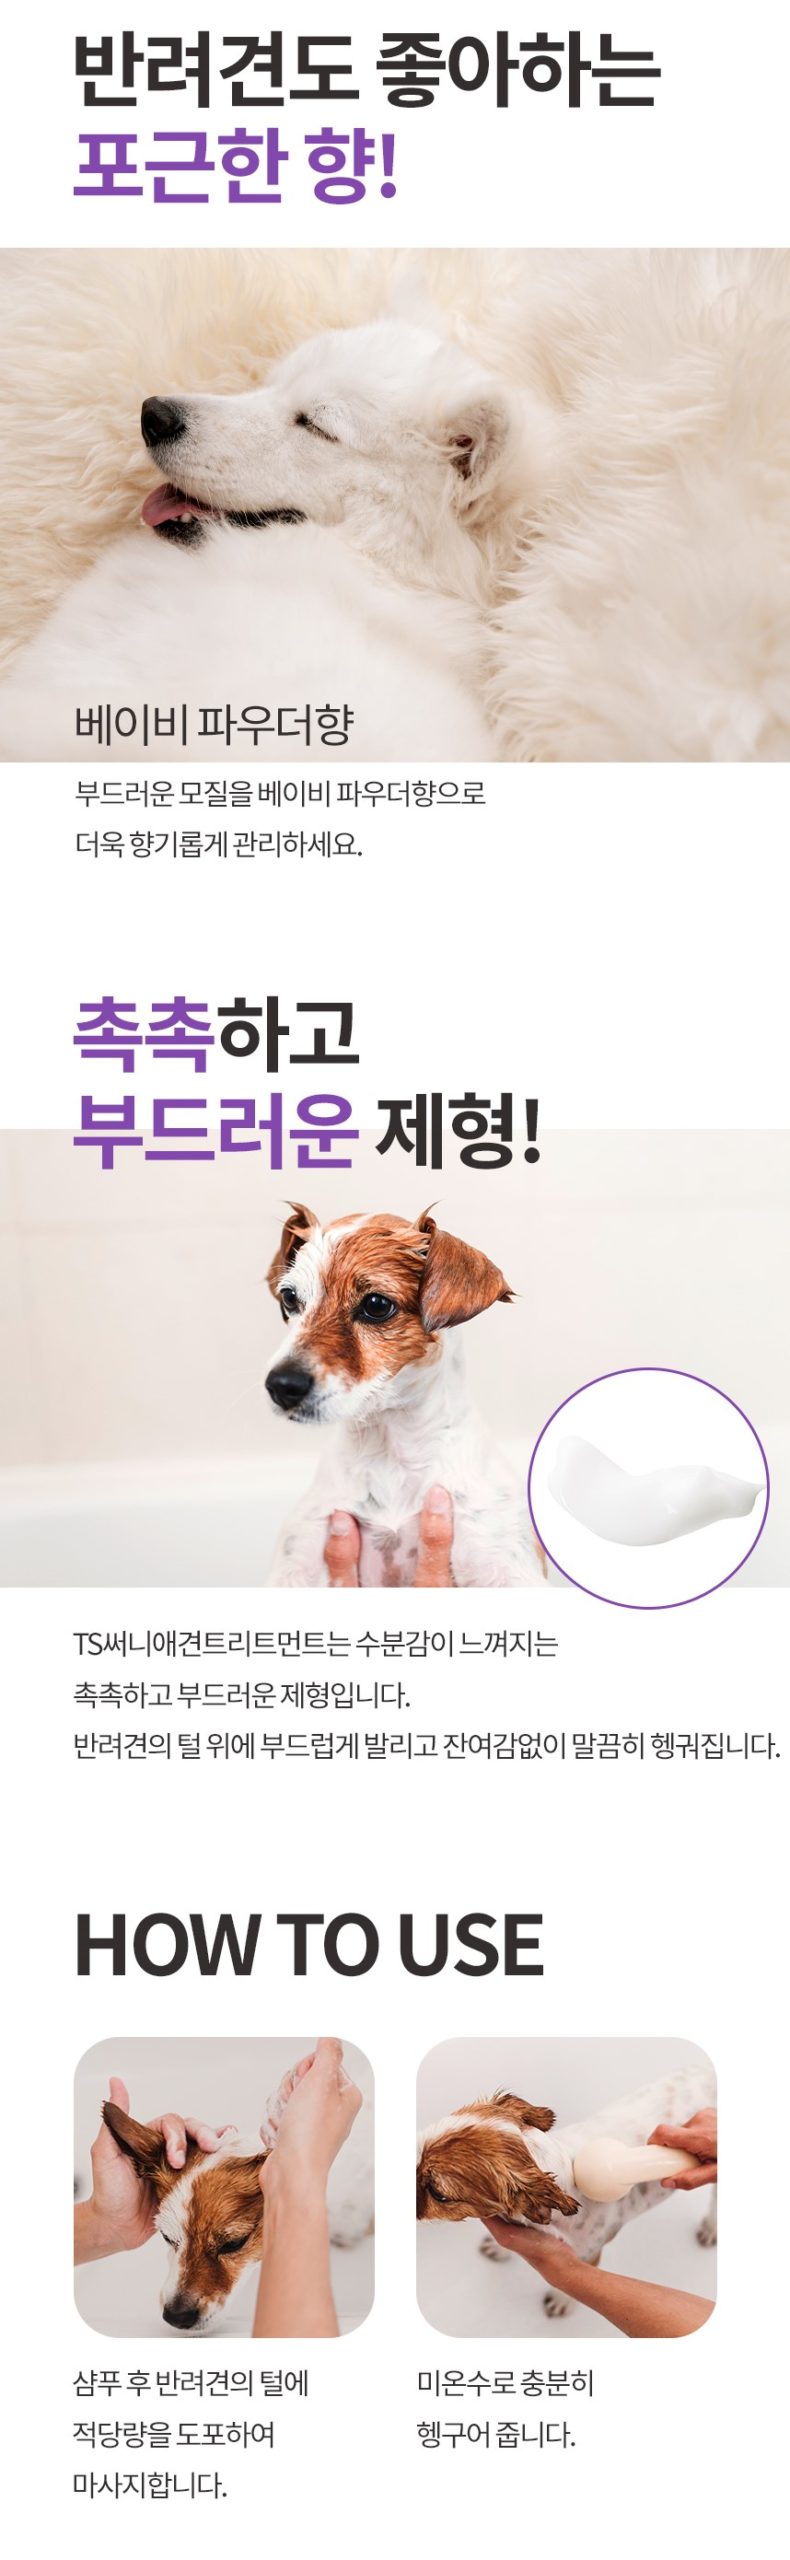 韓國食品-[TS] 써니 팻 트리트먼트 500ml